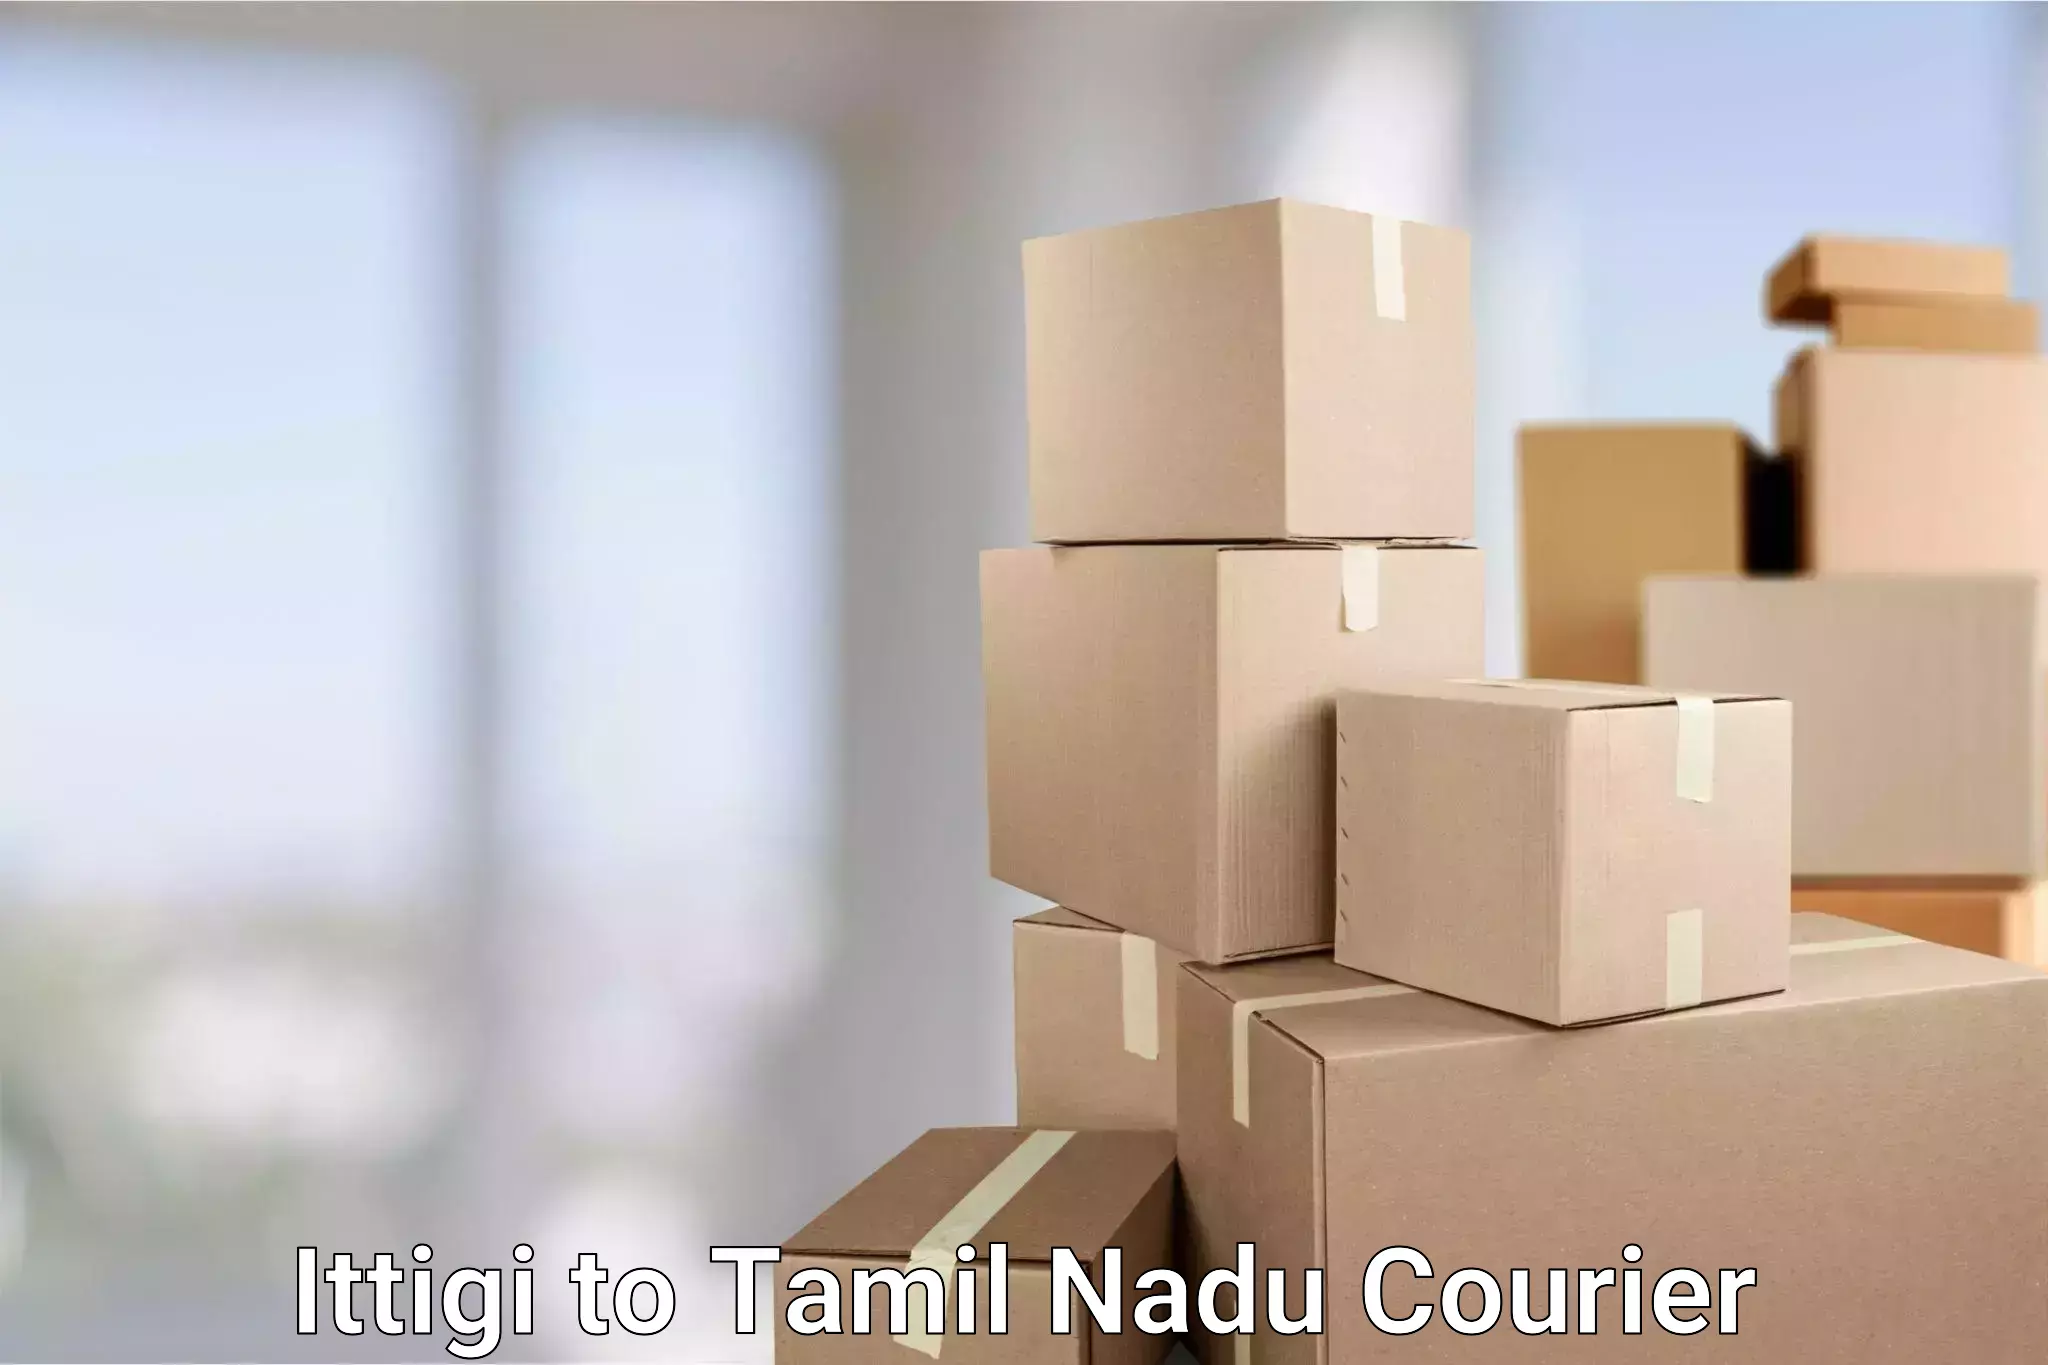 Full-service courier options Ittigi to Karaikudi